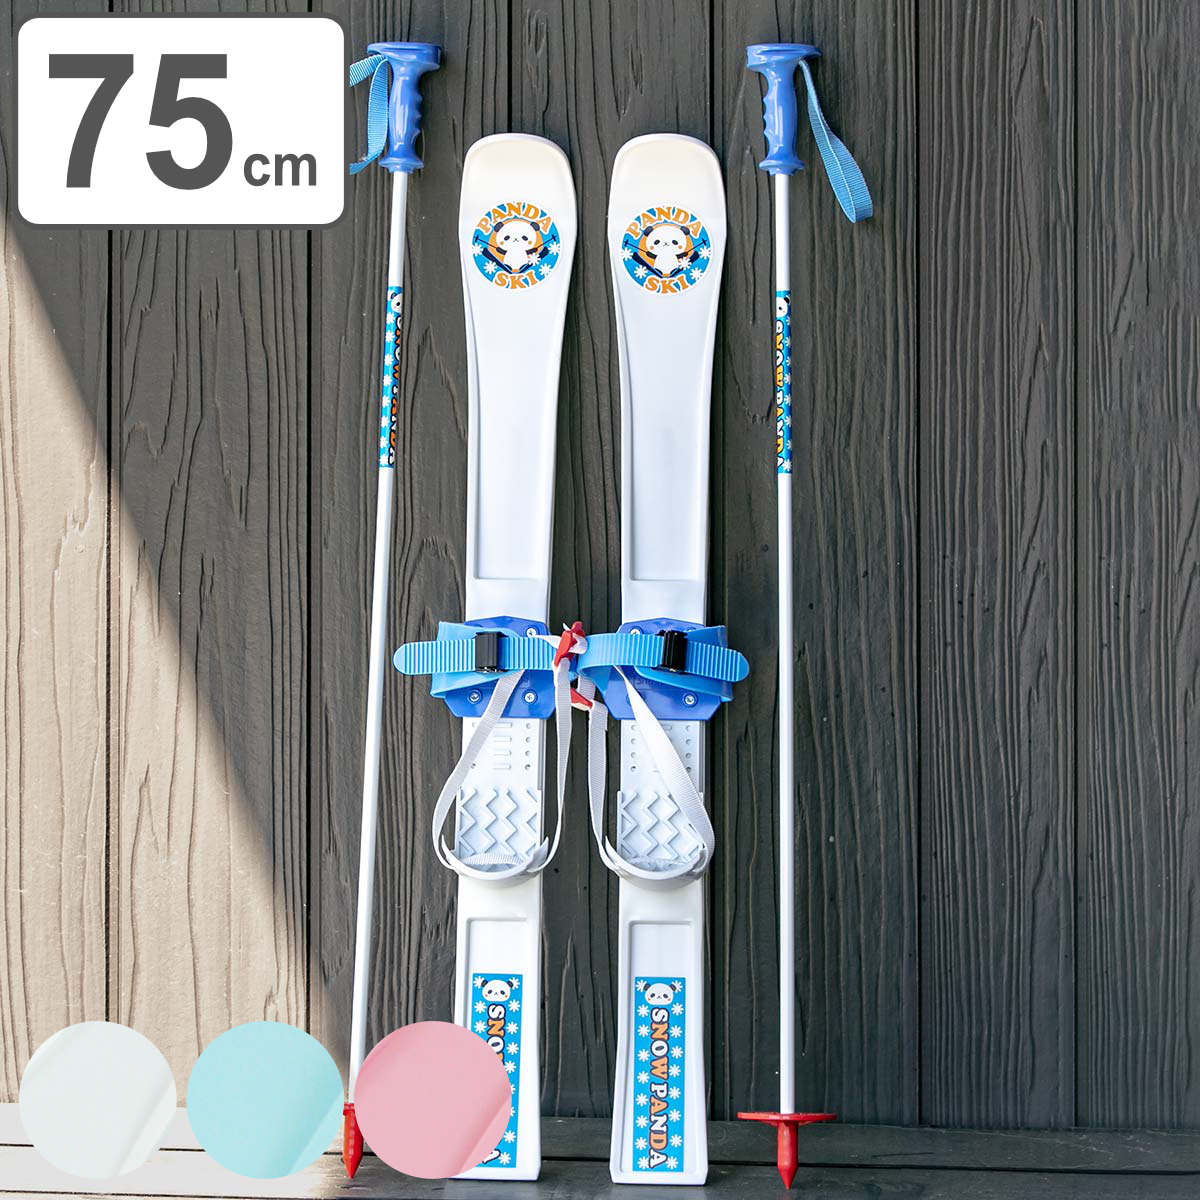 スキーセット 板+ストック+ブーツ 21cm - スキー